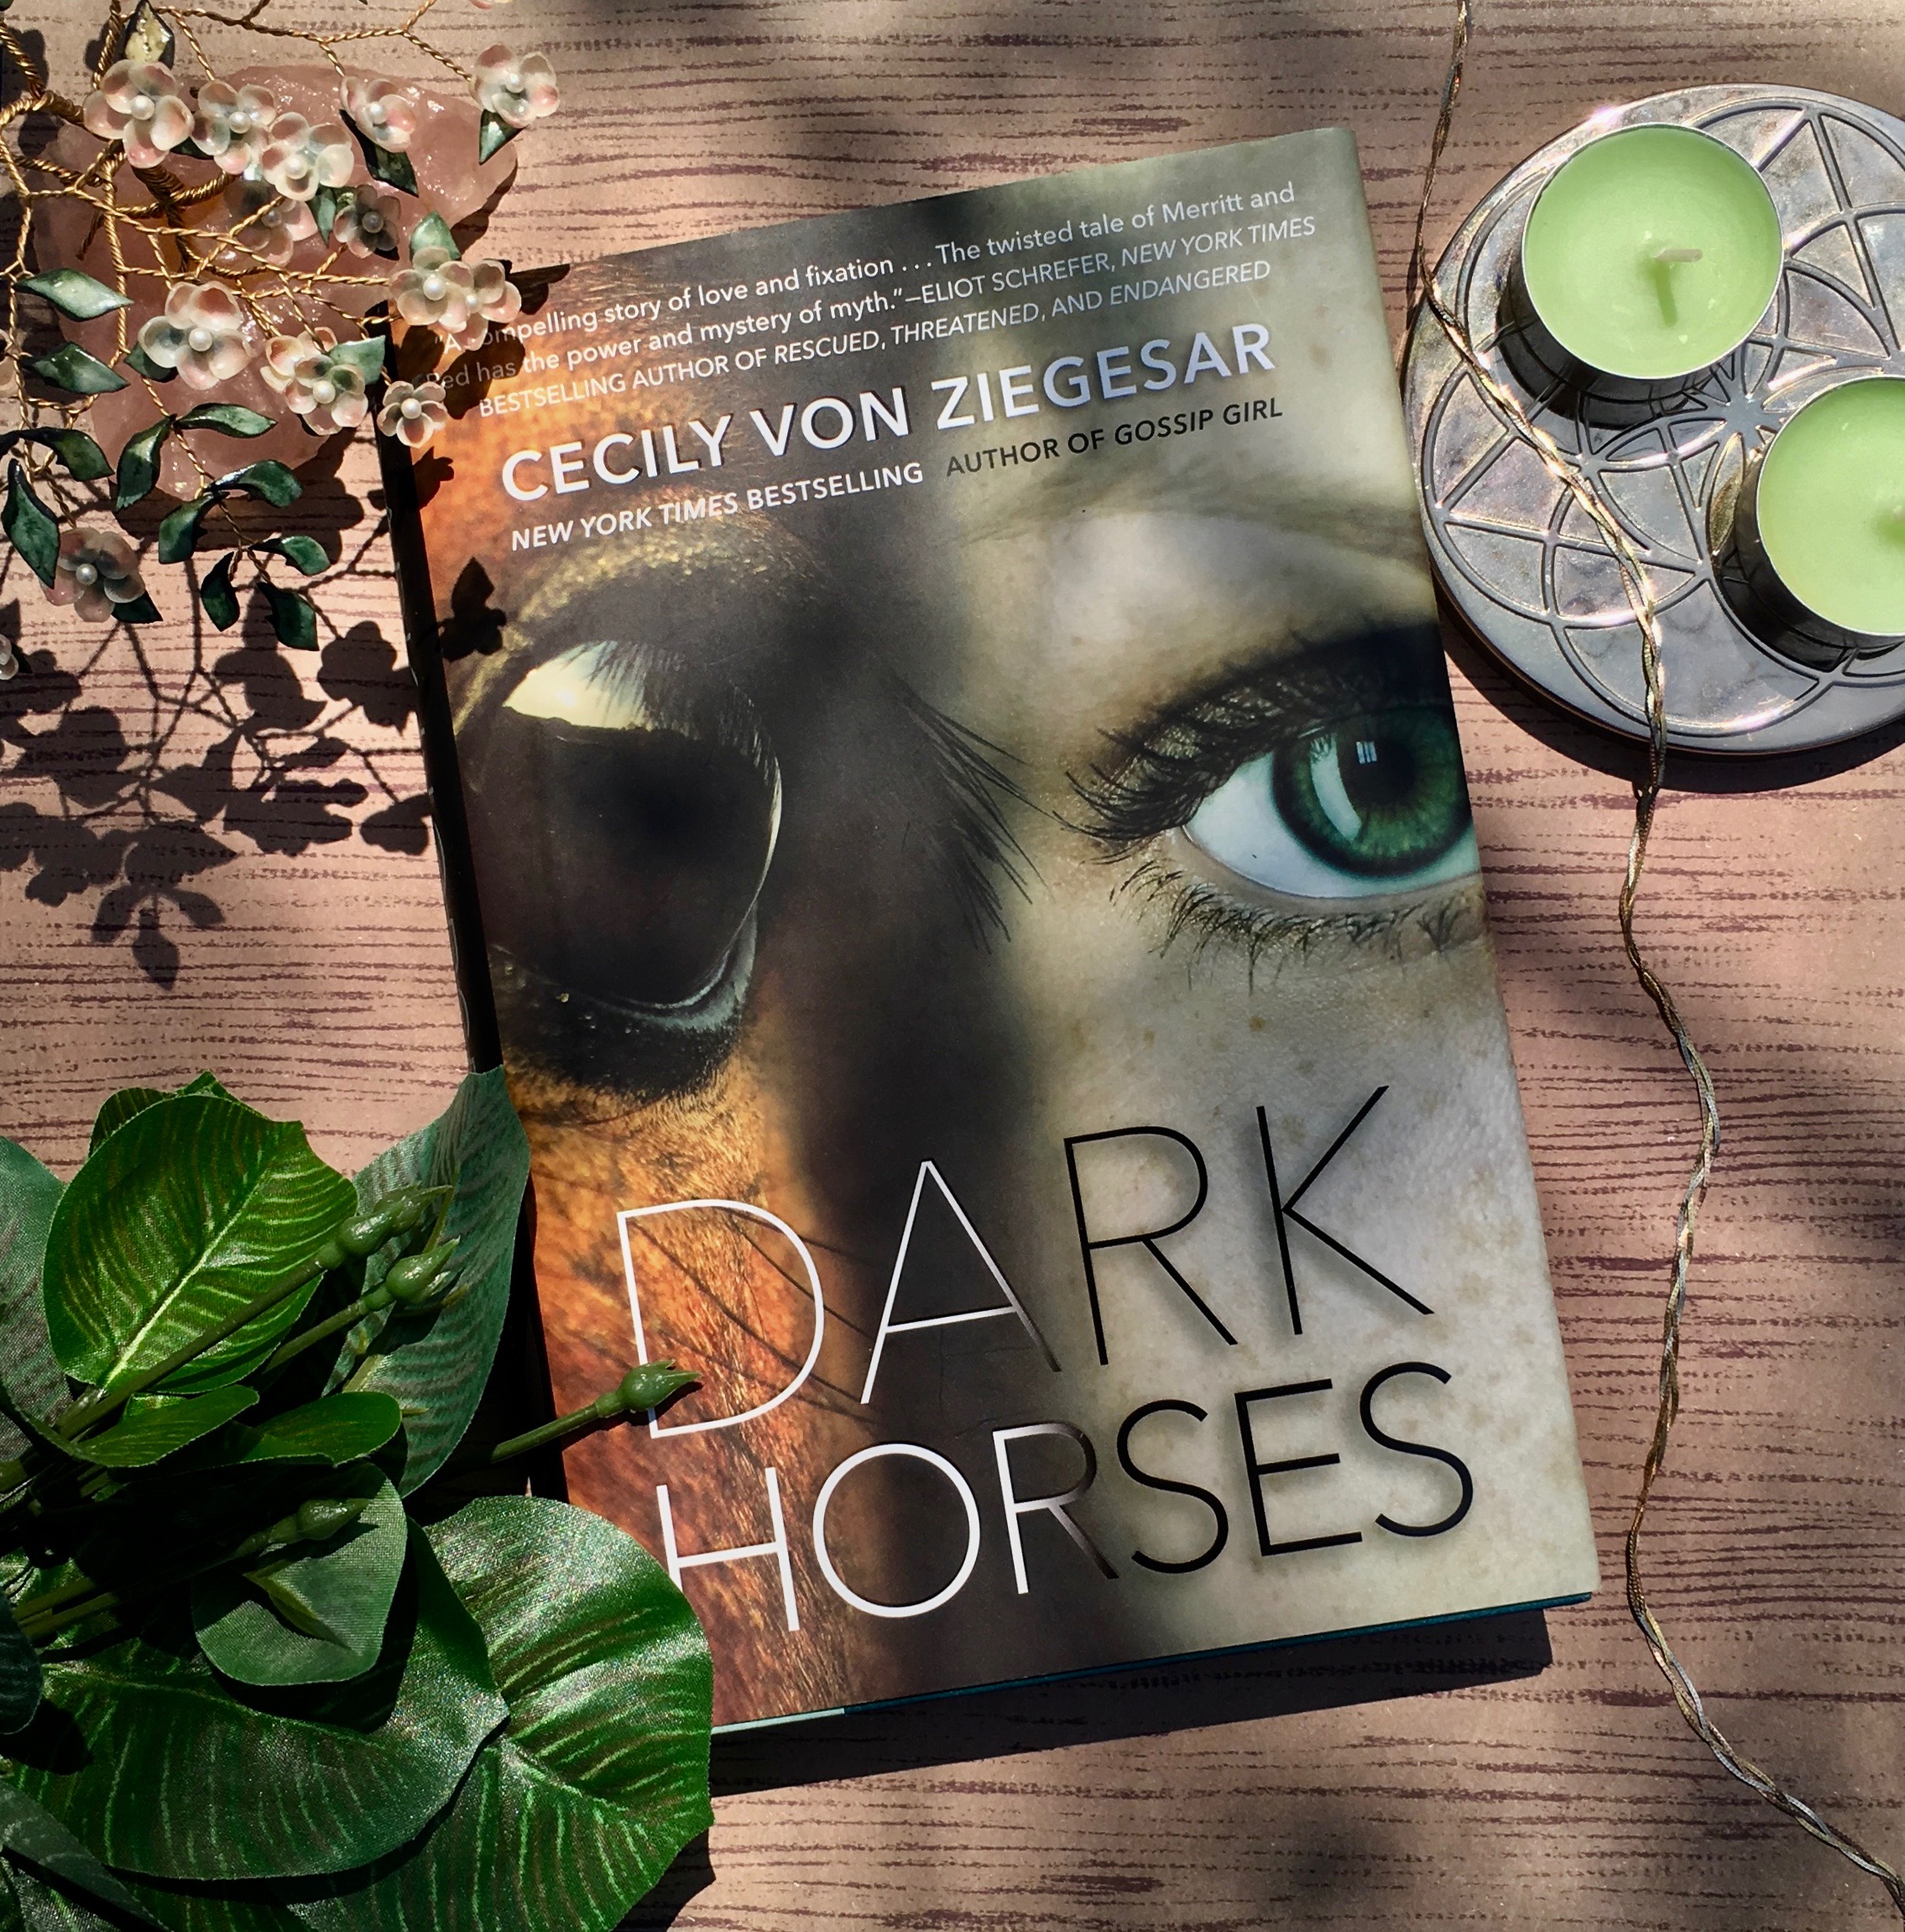 Dark Horses by Cecily Von Ziegsar – Review